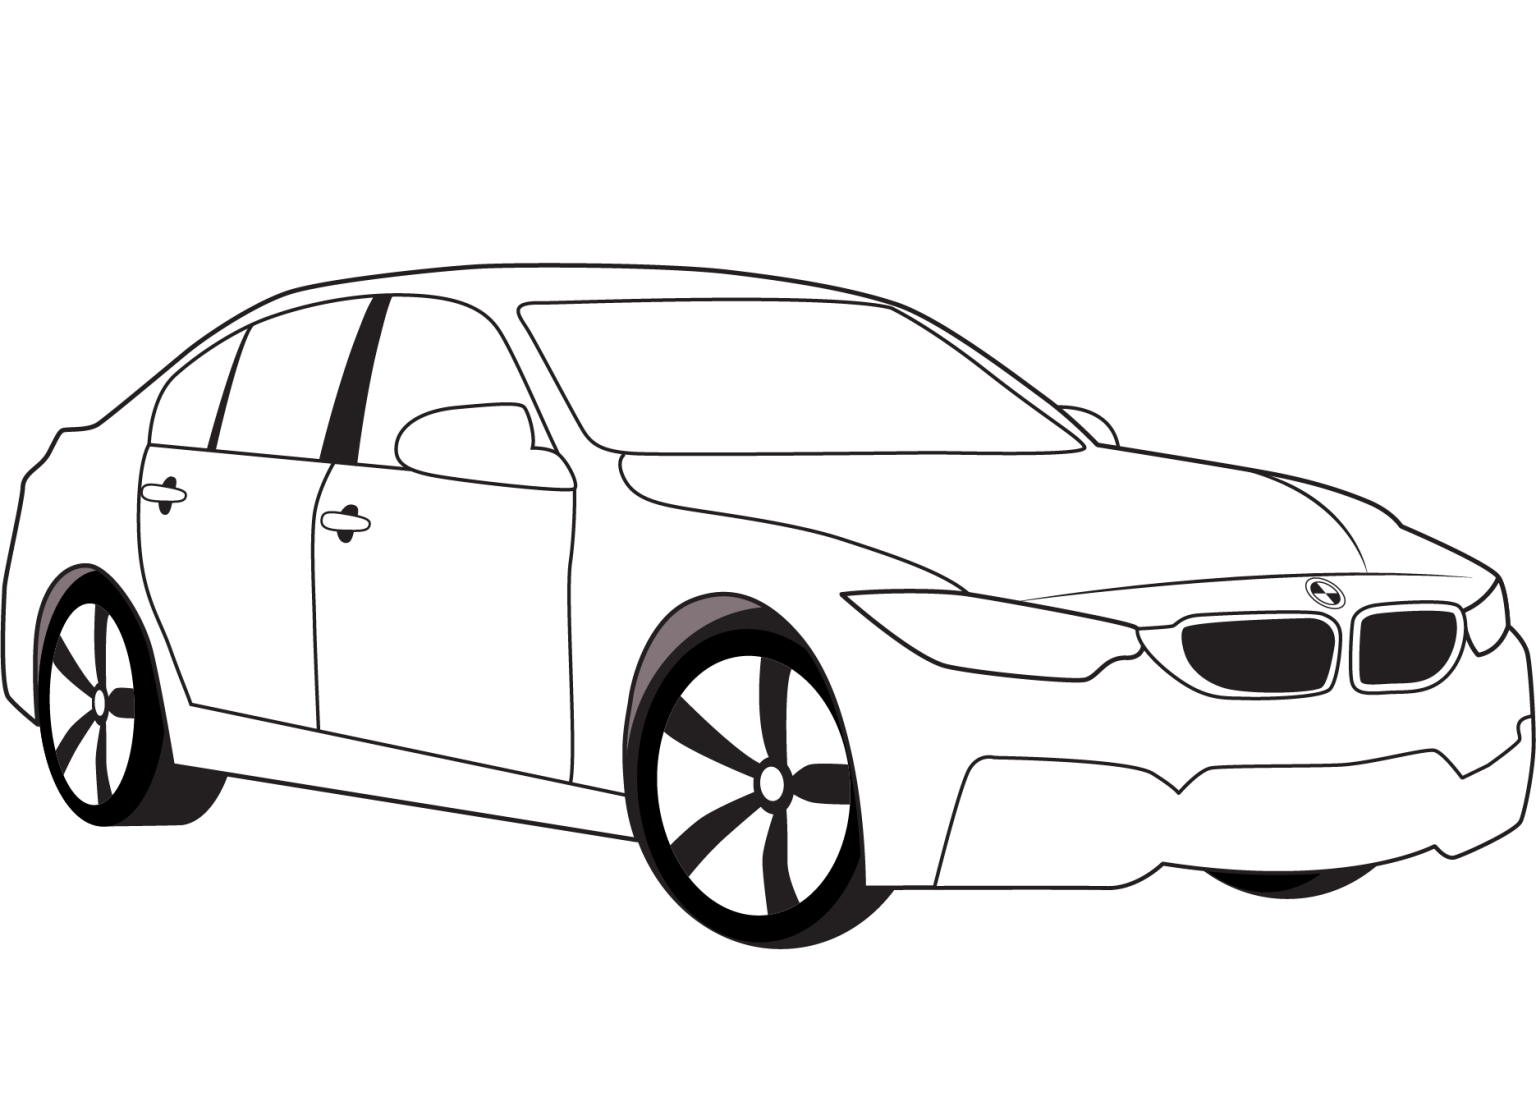 Раскраска БМВ м5. Раскраска BMW m5 f90. Раскраска BMW e60. BMW m5 f90 скетч. Распечатать бмв м5